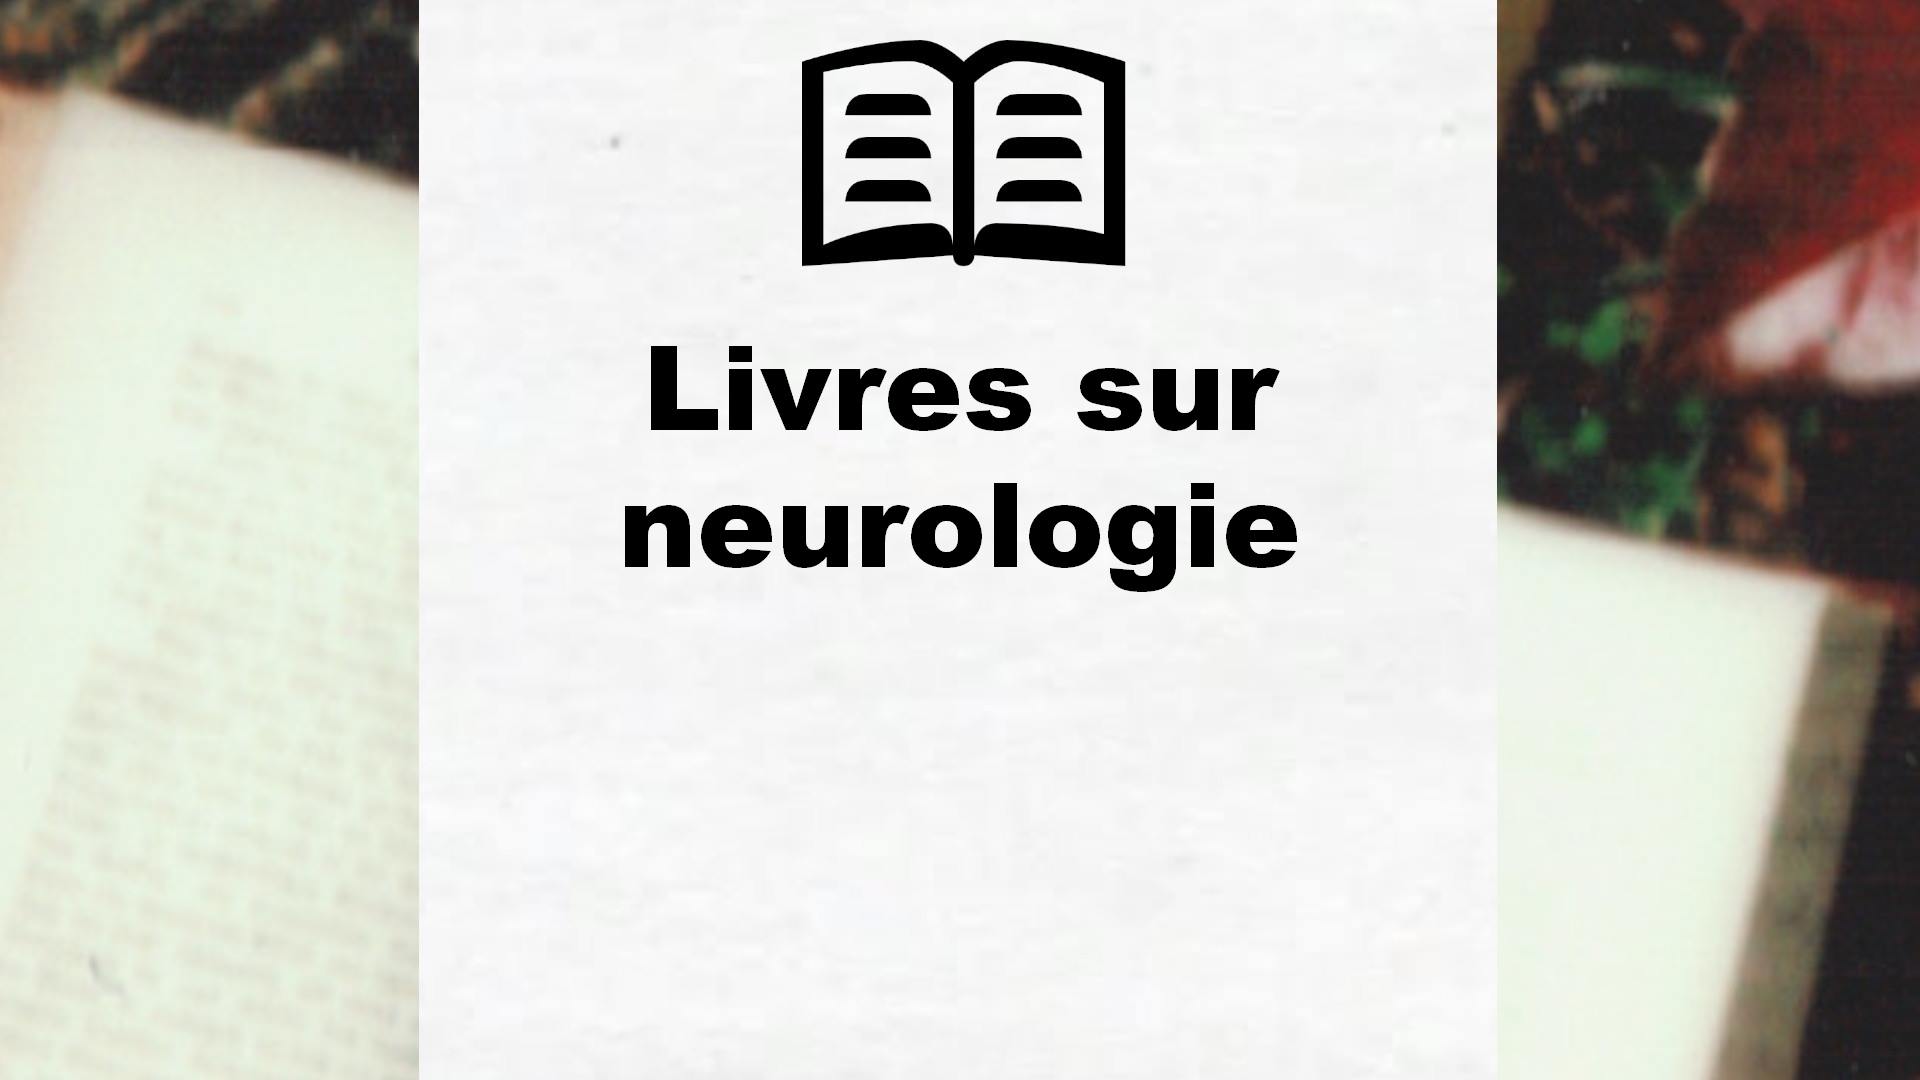 Livres sur neurologie